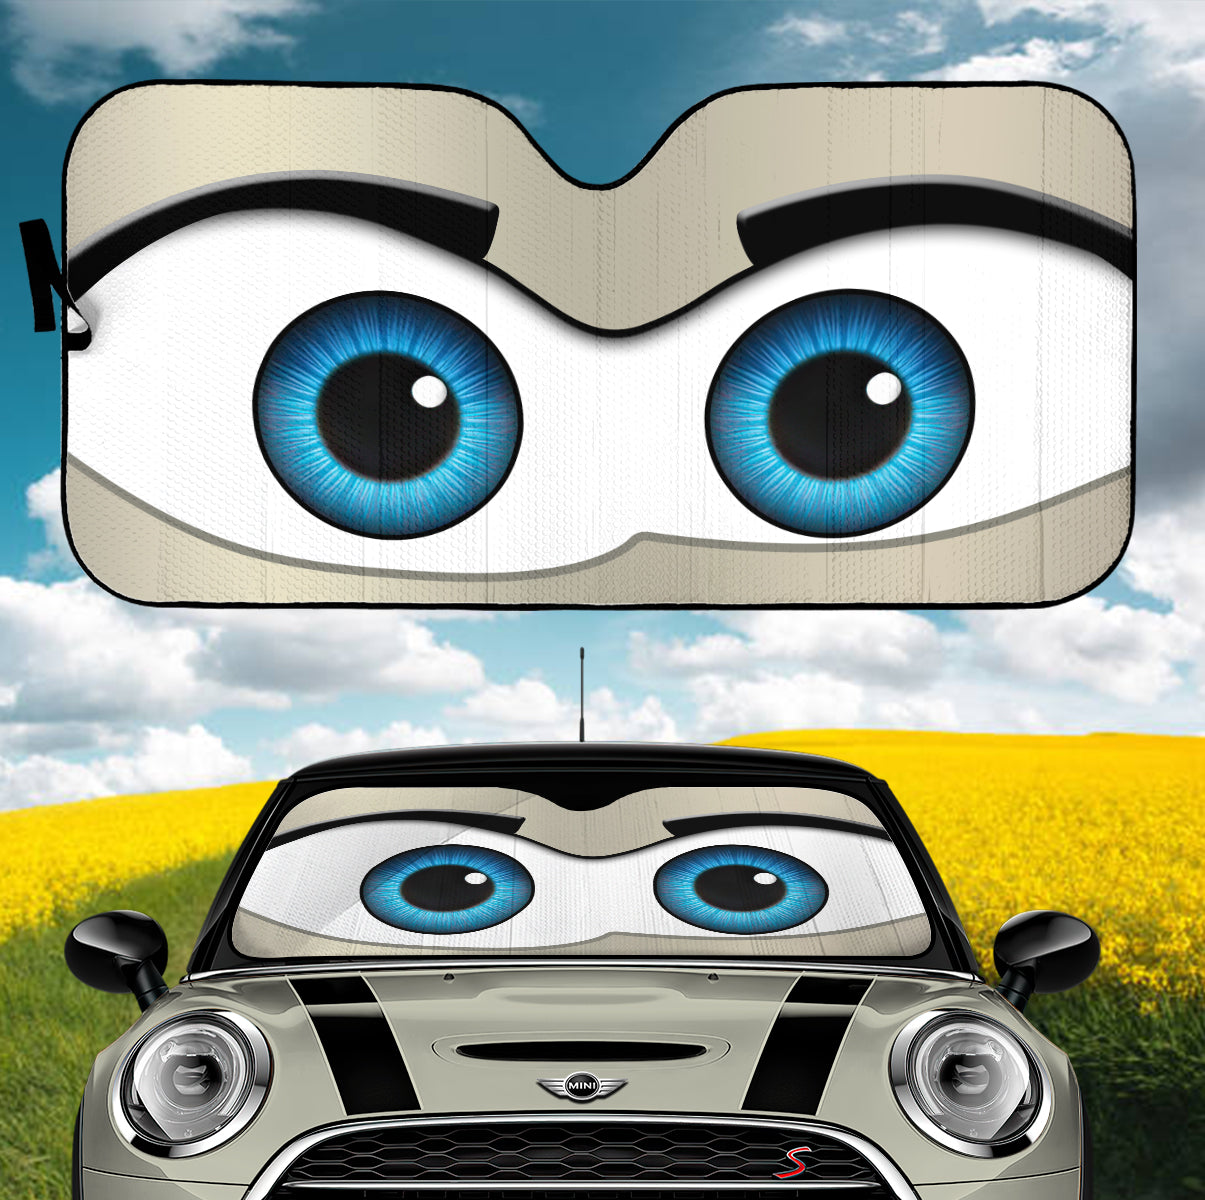 Gray Cartoon Eyes Car Auto Sunshades